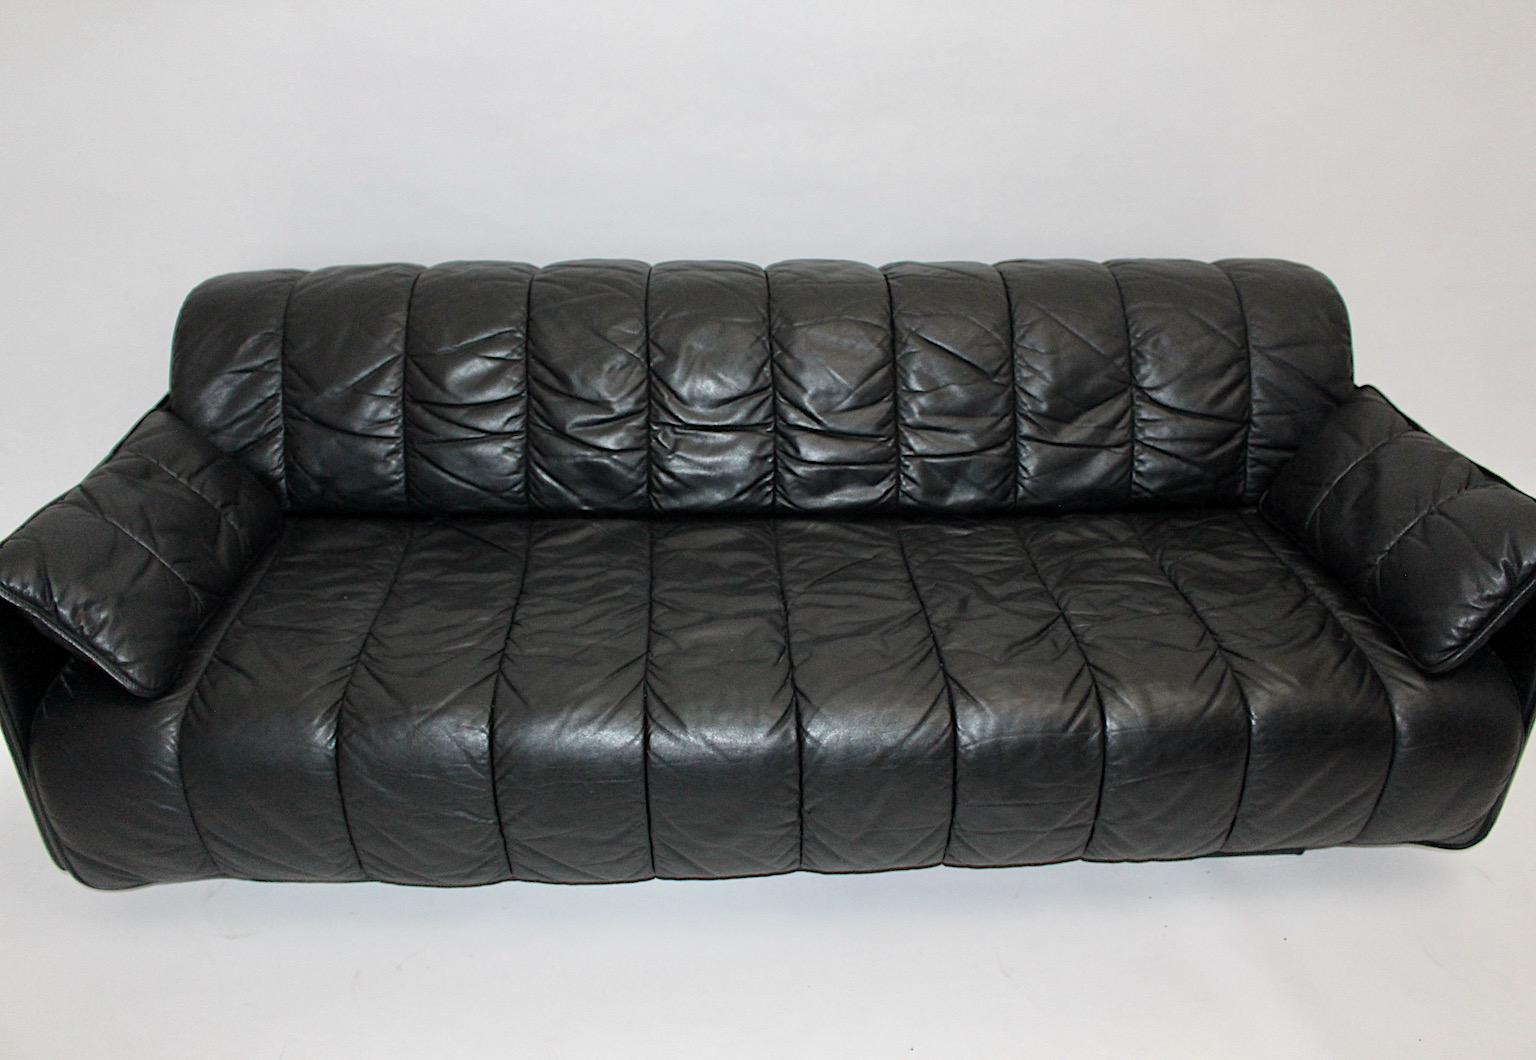 DeSede Vintage Sofa oder Daybed DS 69 aus hochwertigem schwarzem genähtem Leder 1970er Jahre Schweiz.
Während das wunderbare und bequeme Sofa auch als freistehende Sitzgelegenheit verwendet werden kann, erlaubt die ausziehbare Funktion, jeden Aspekt